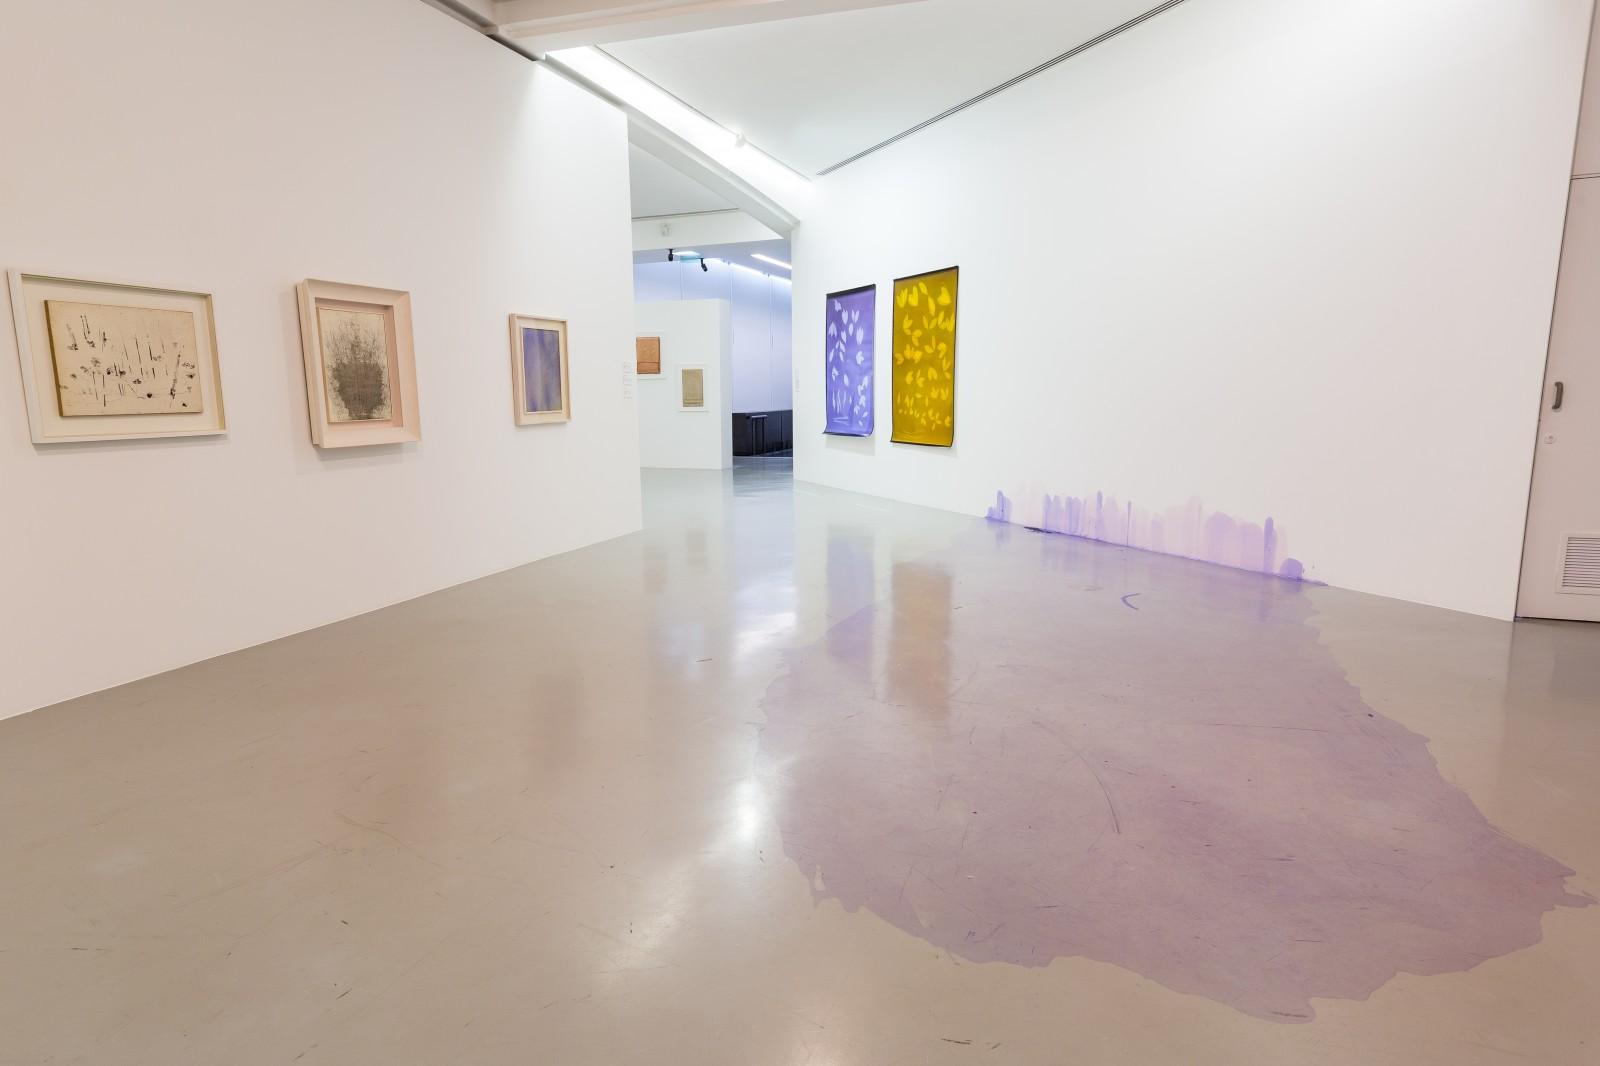 View of the exhibition "Cosmogonies - Au gré des éléments", MAMAC - Musée d'Art Moderne et d'Art Contemporain de Nice, 2018 (COS 3, COS 8, COS 13)